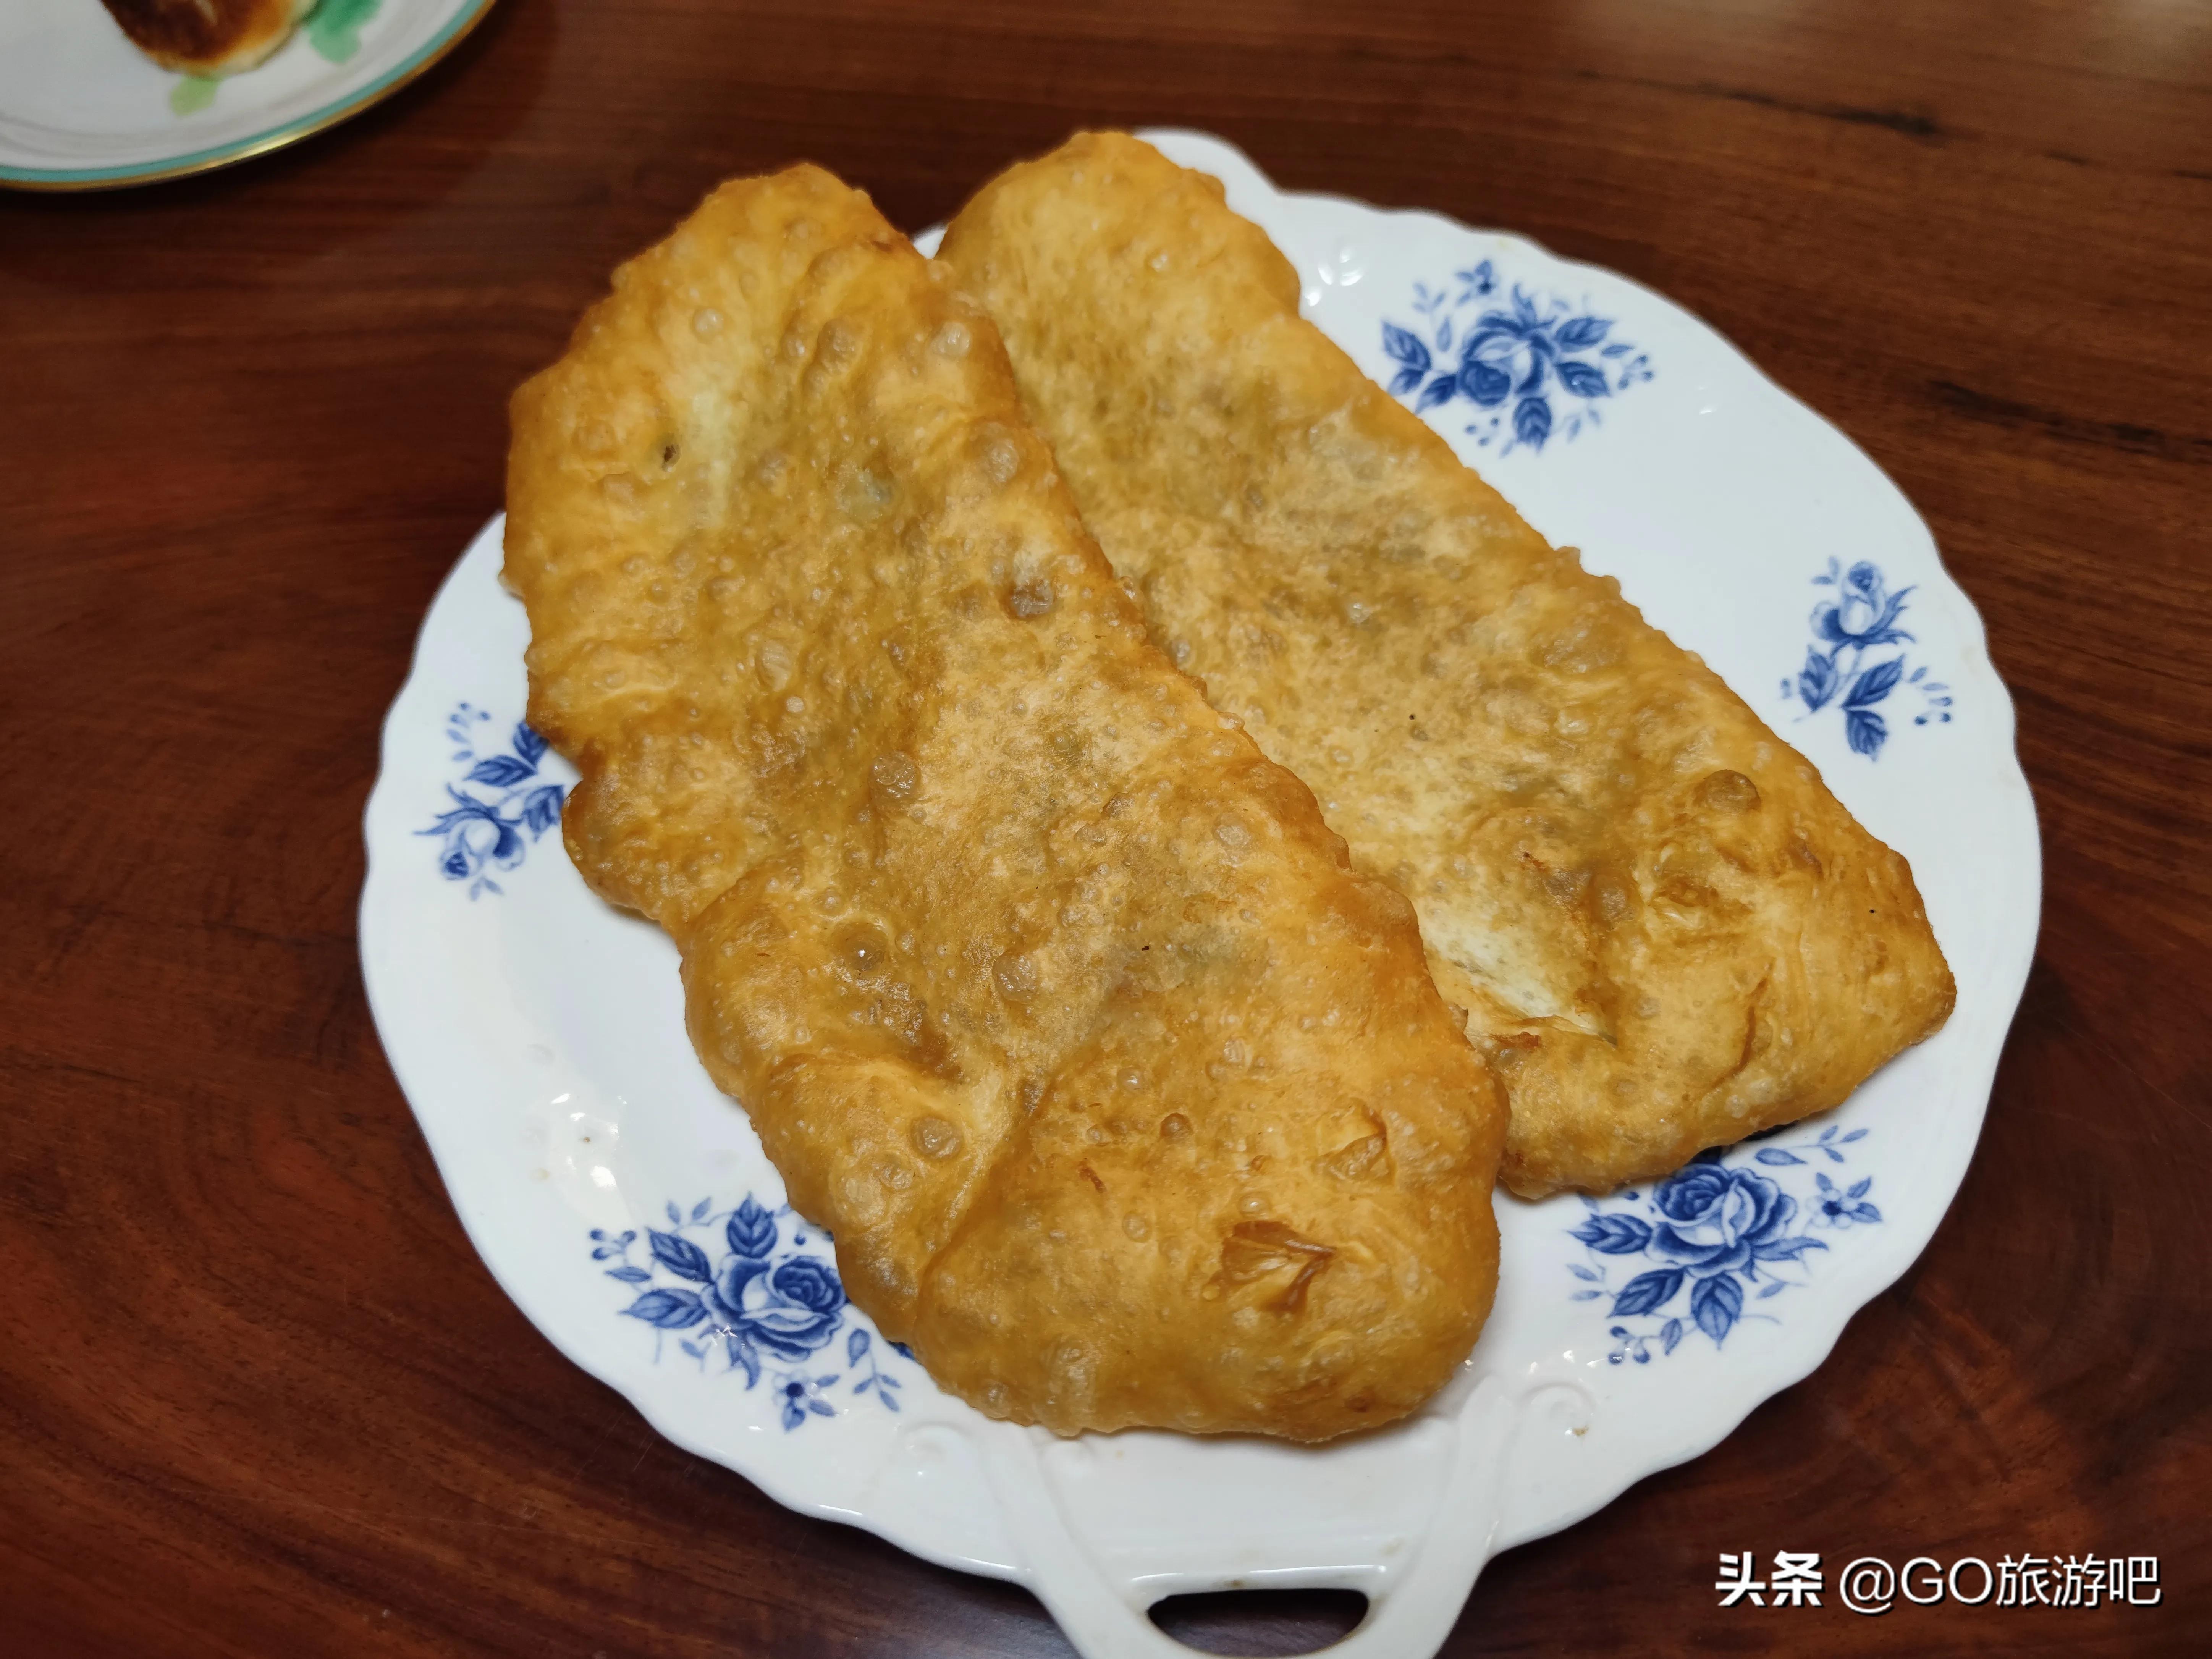 来武汉旅游一定要体验一次武汉的早餐文化— —“过早”。 - 武汉热线